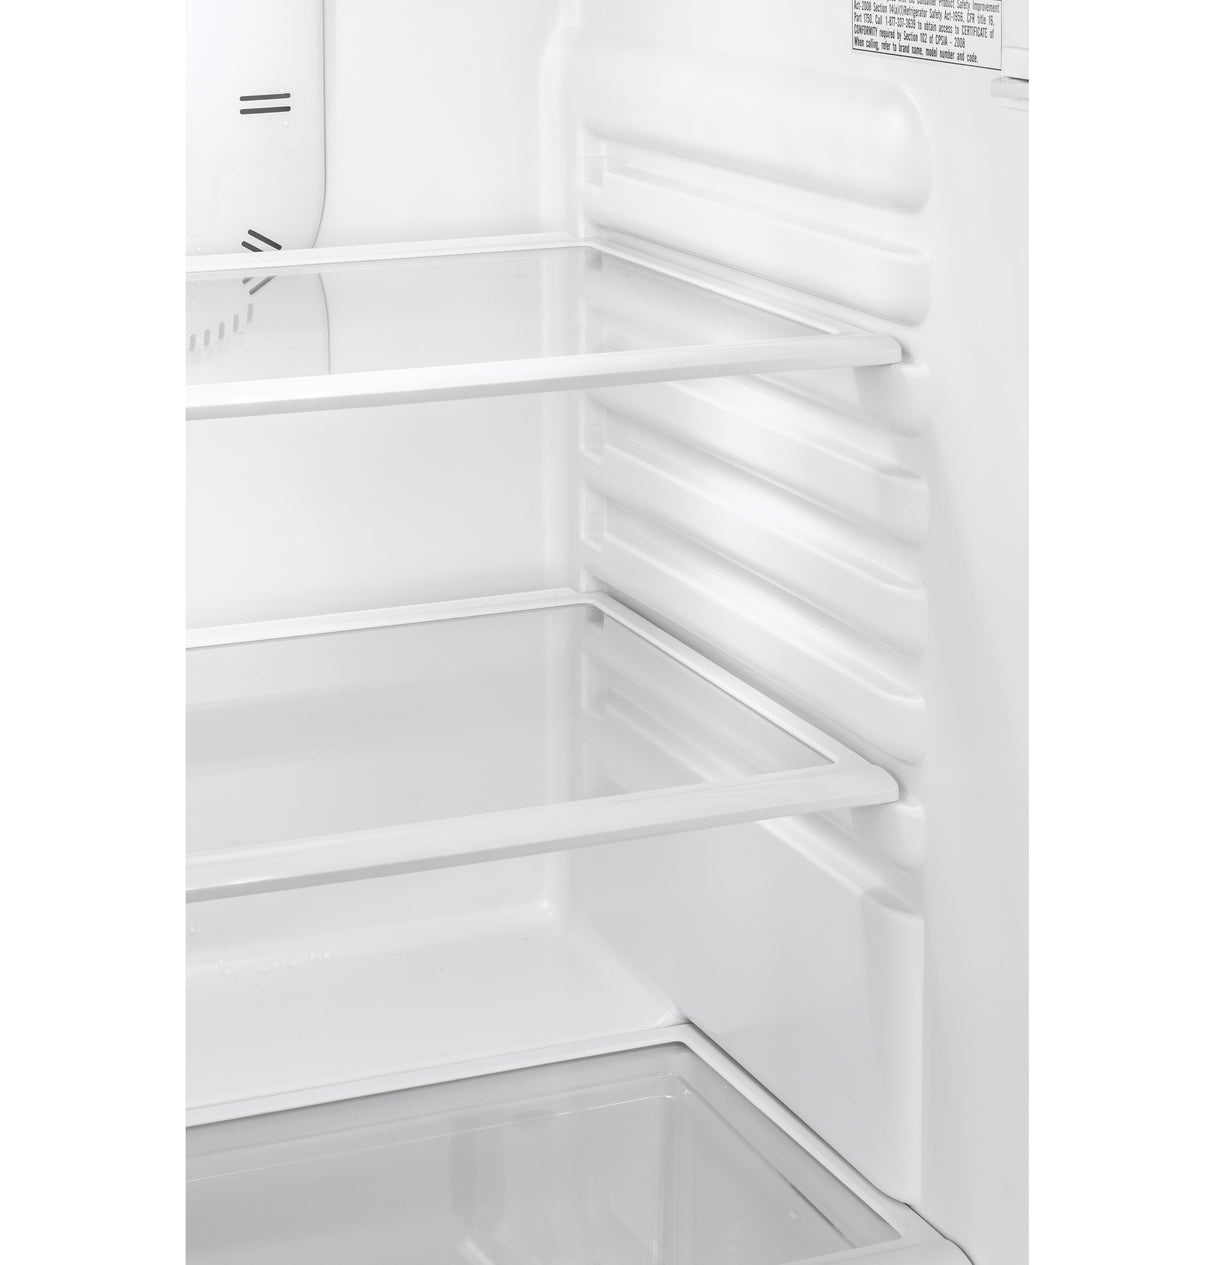 9.8 Cu. Ft. Top Freezer Refrigerator - (HA10TG21SB)